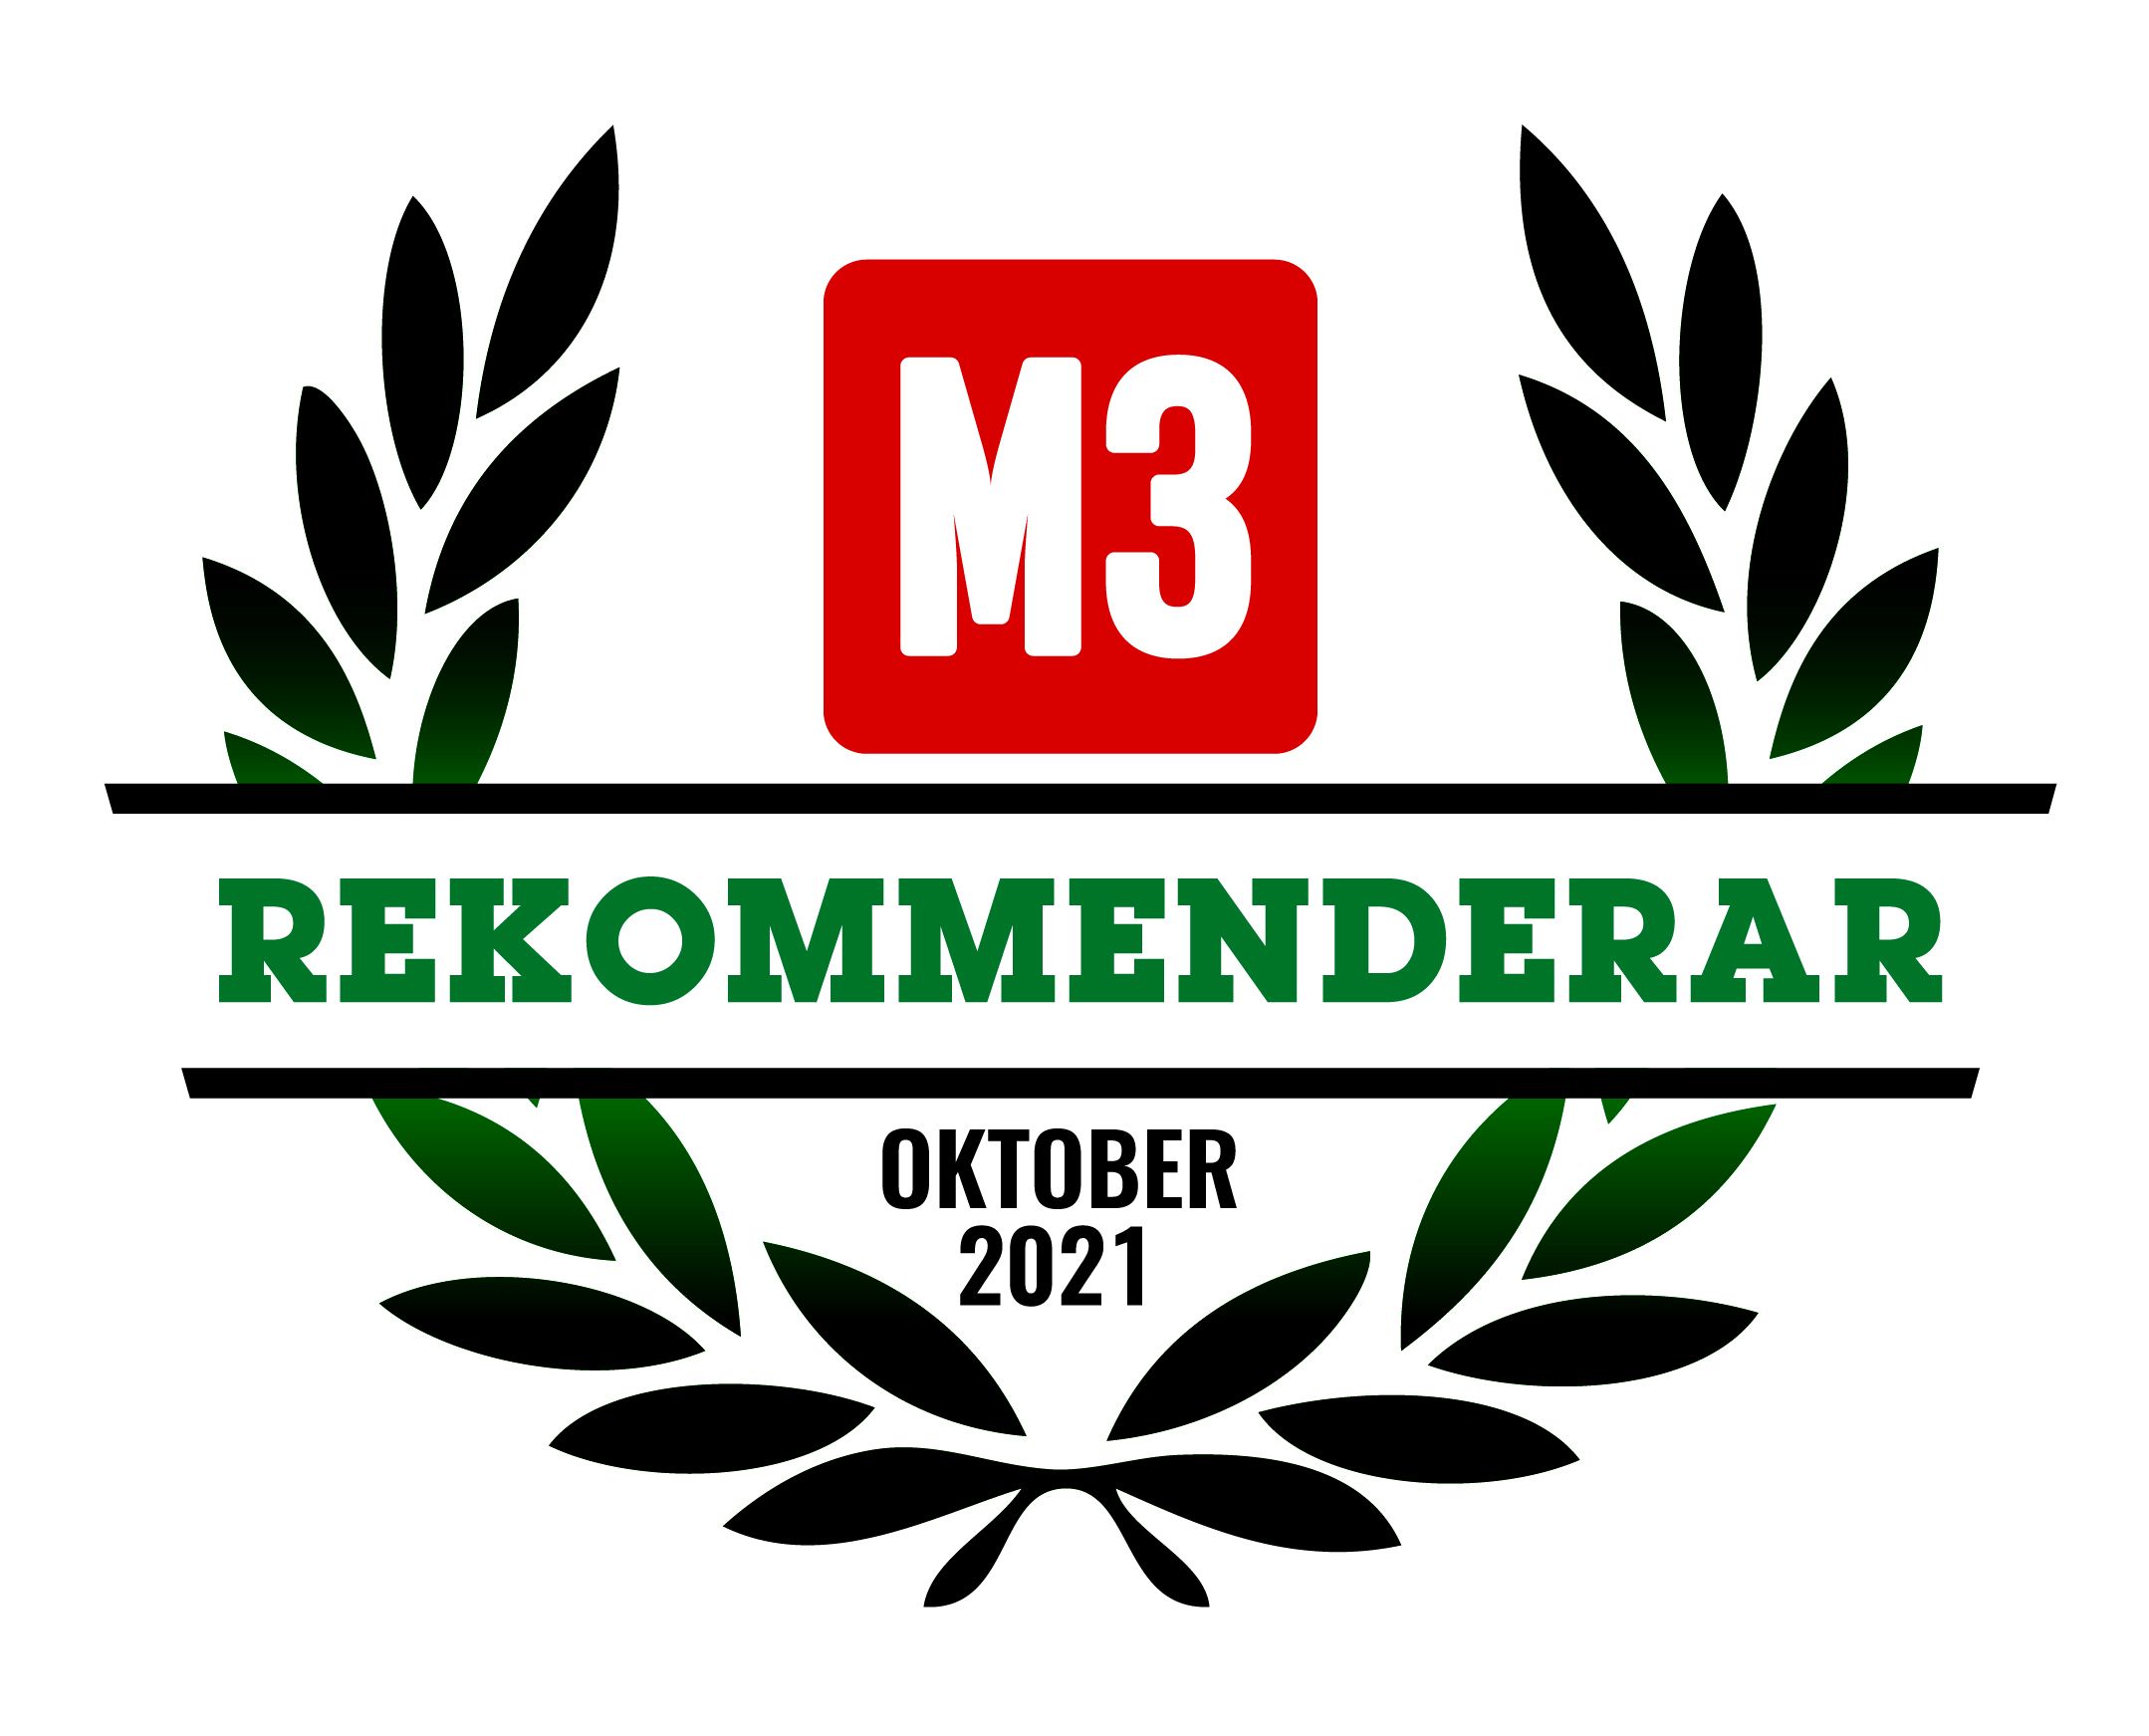 M3 rekommenderar oktober 2021